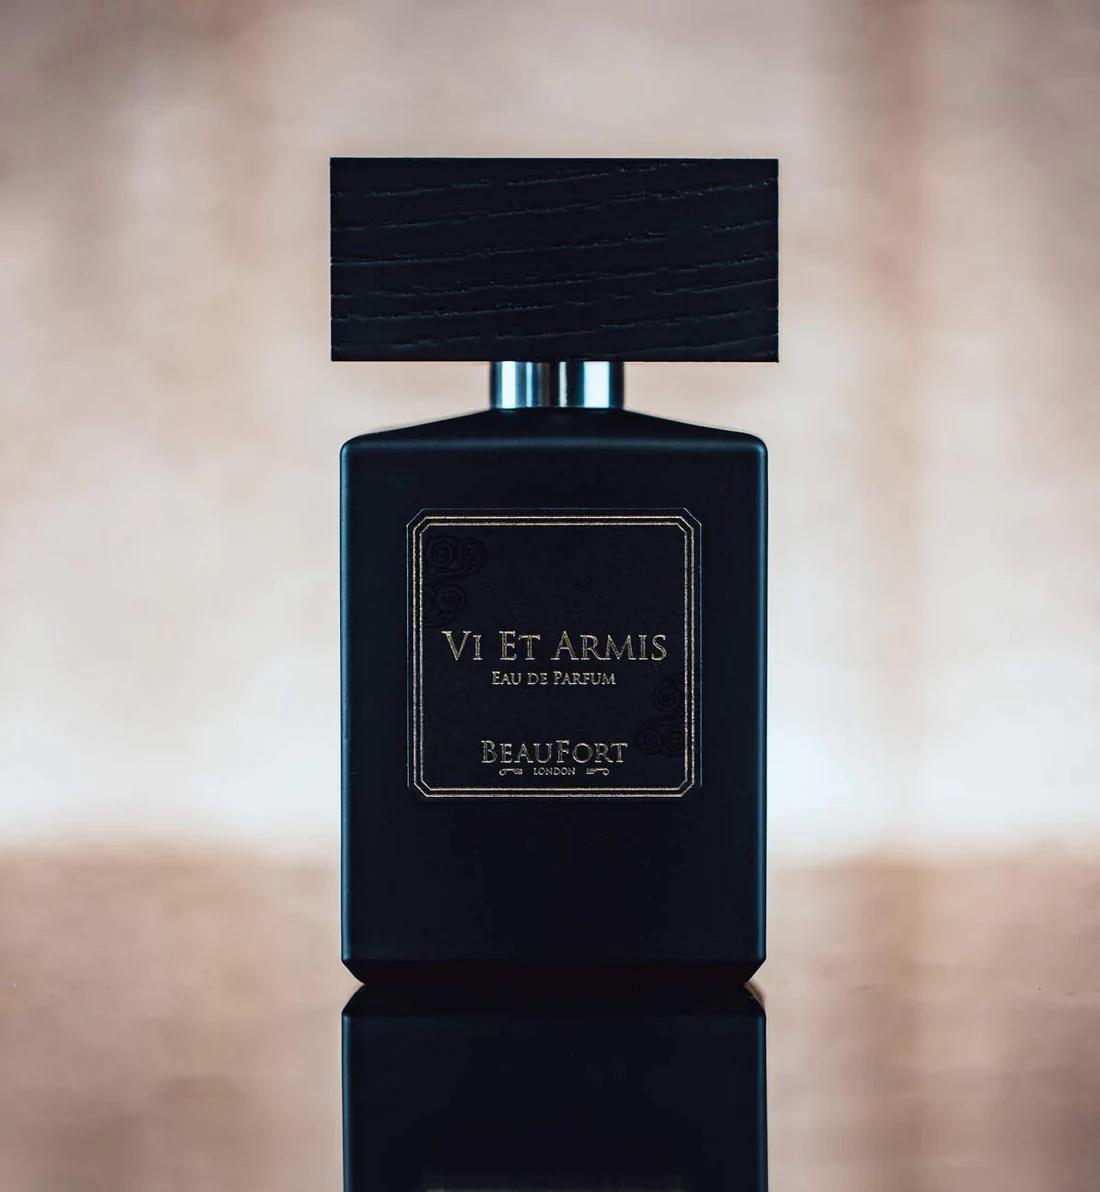 BeauFort London - Vi et Armis | Perfume Lounge